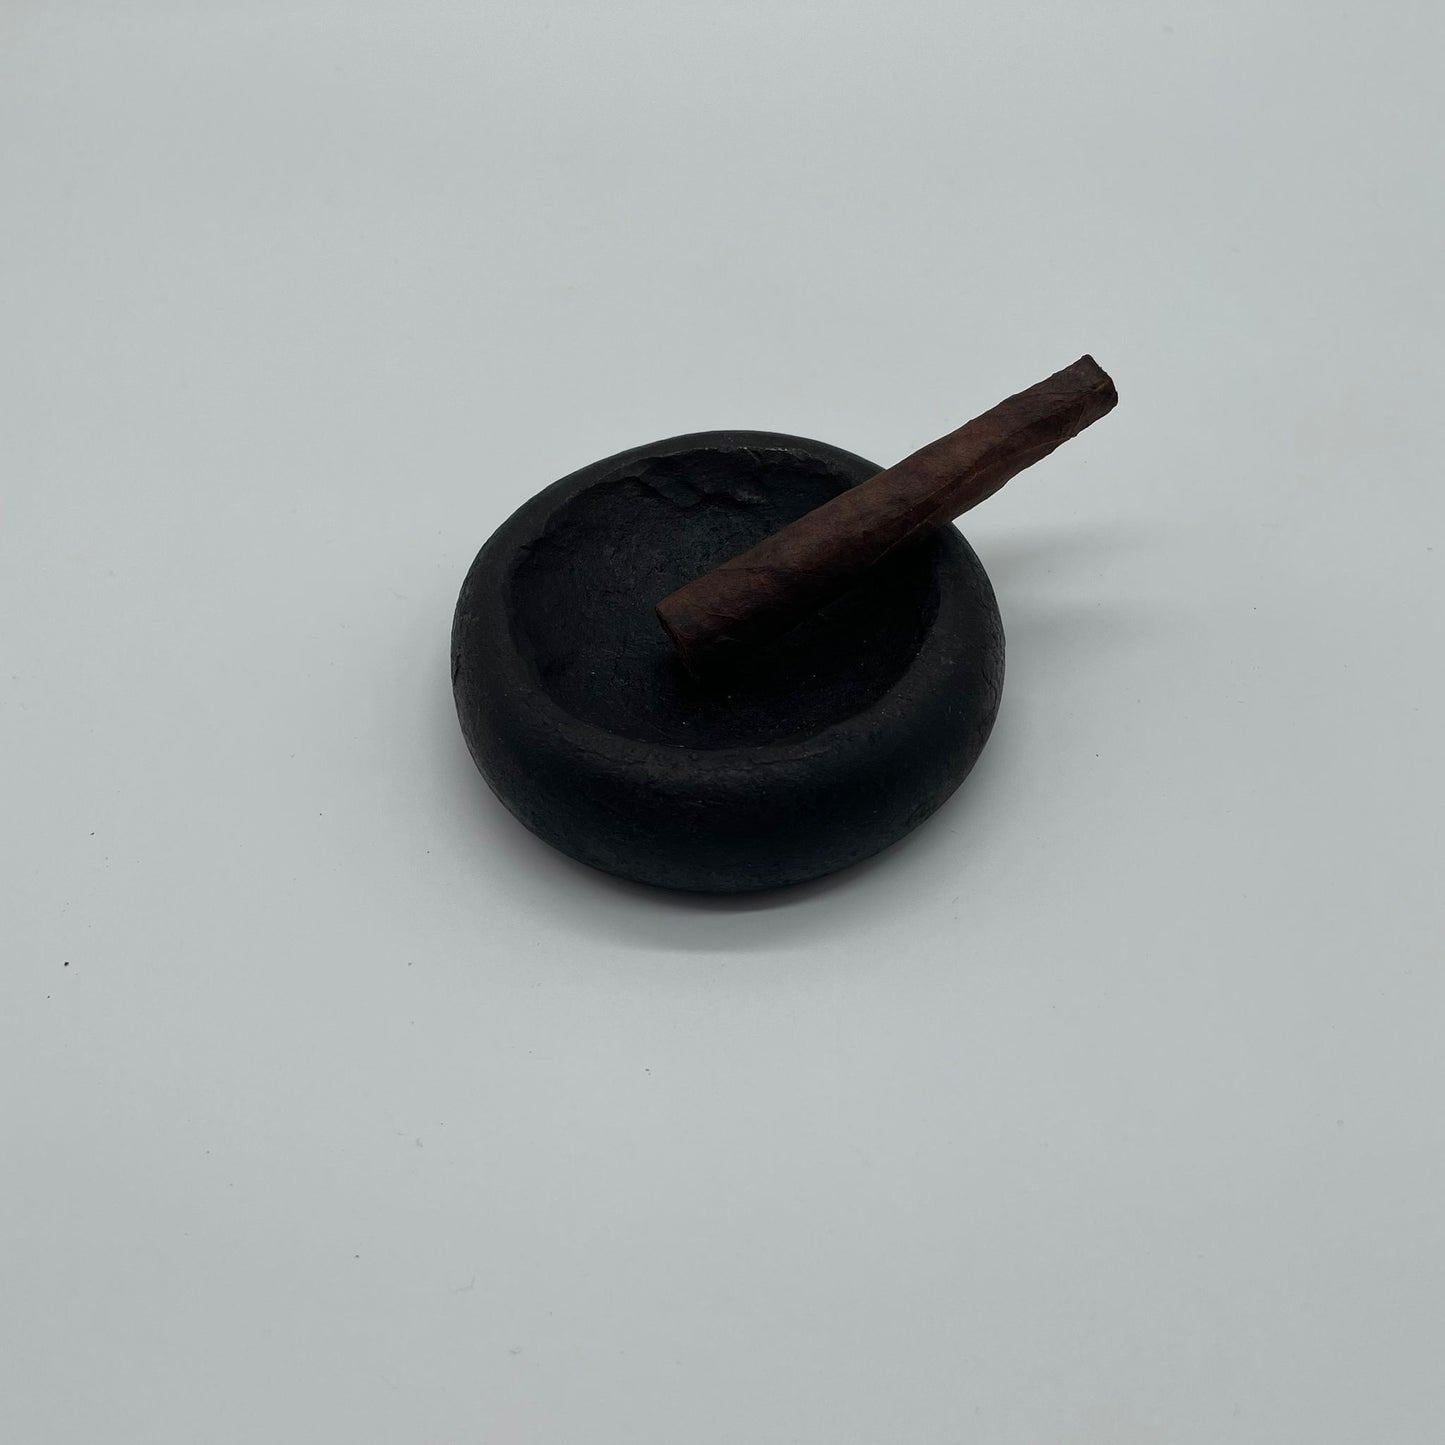 Zigarren Aschenbecher, handgefertigtes Unikat vom Künstler aus schwerem Stahl